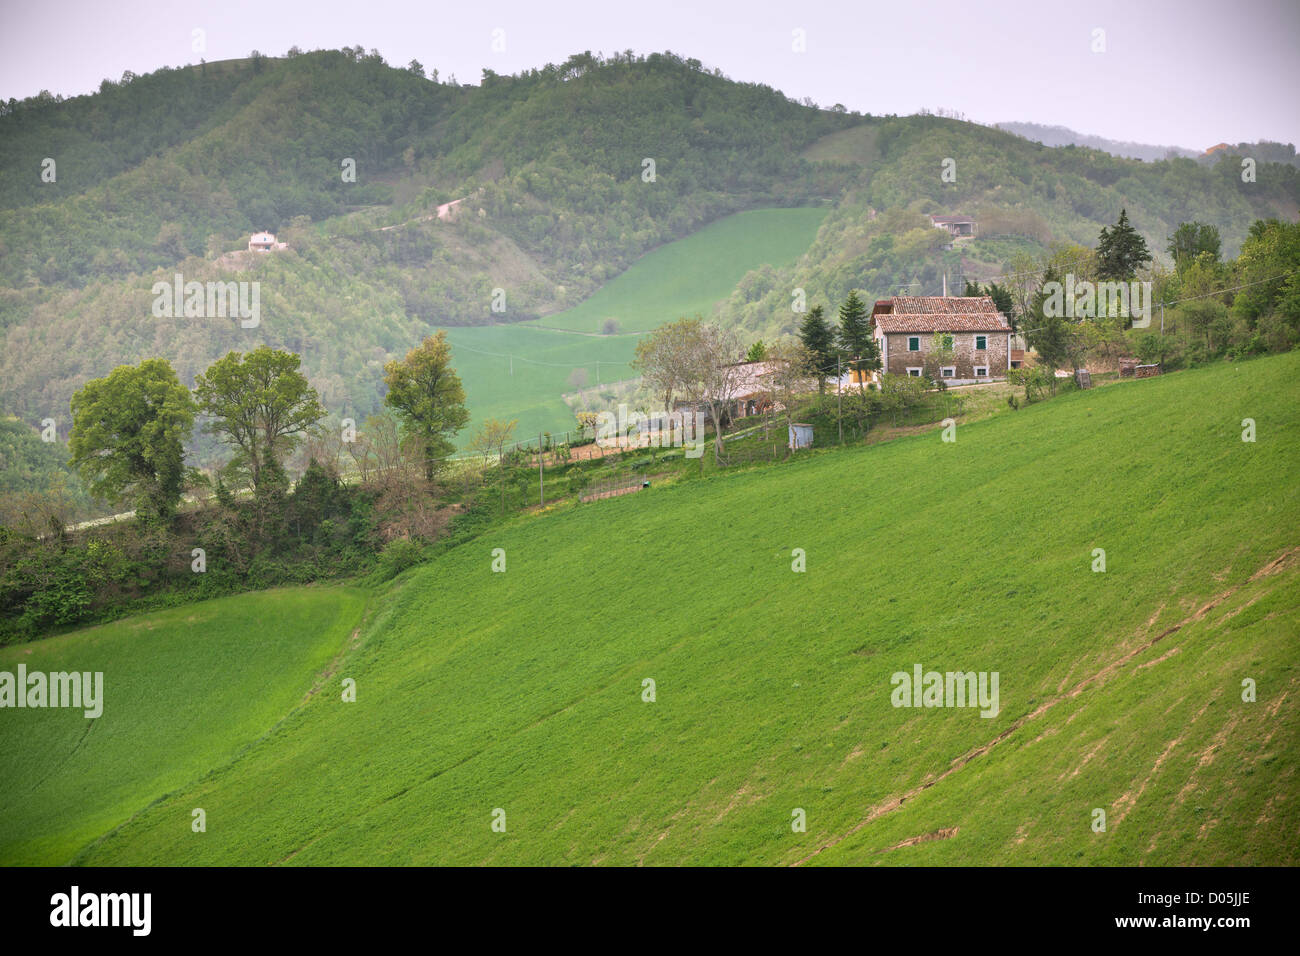 Schlechtes Wetter in Italien Ackerland. Grüne Hügel und Haus - getönten Vignetted Bild Stockfoto